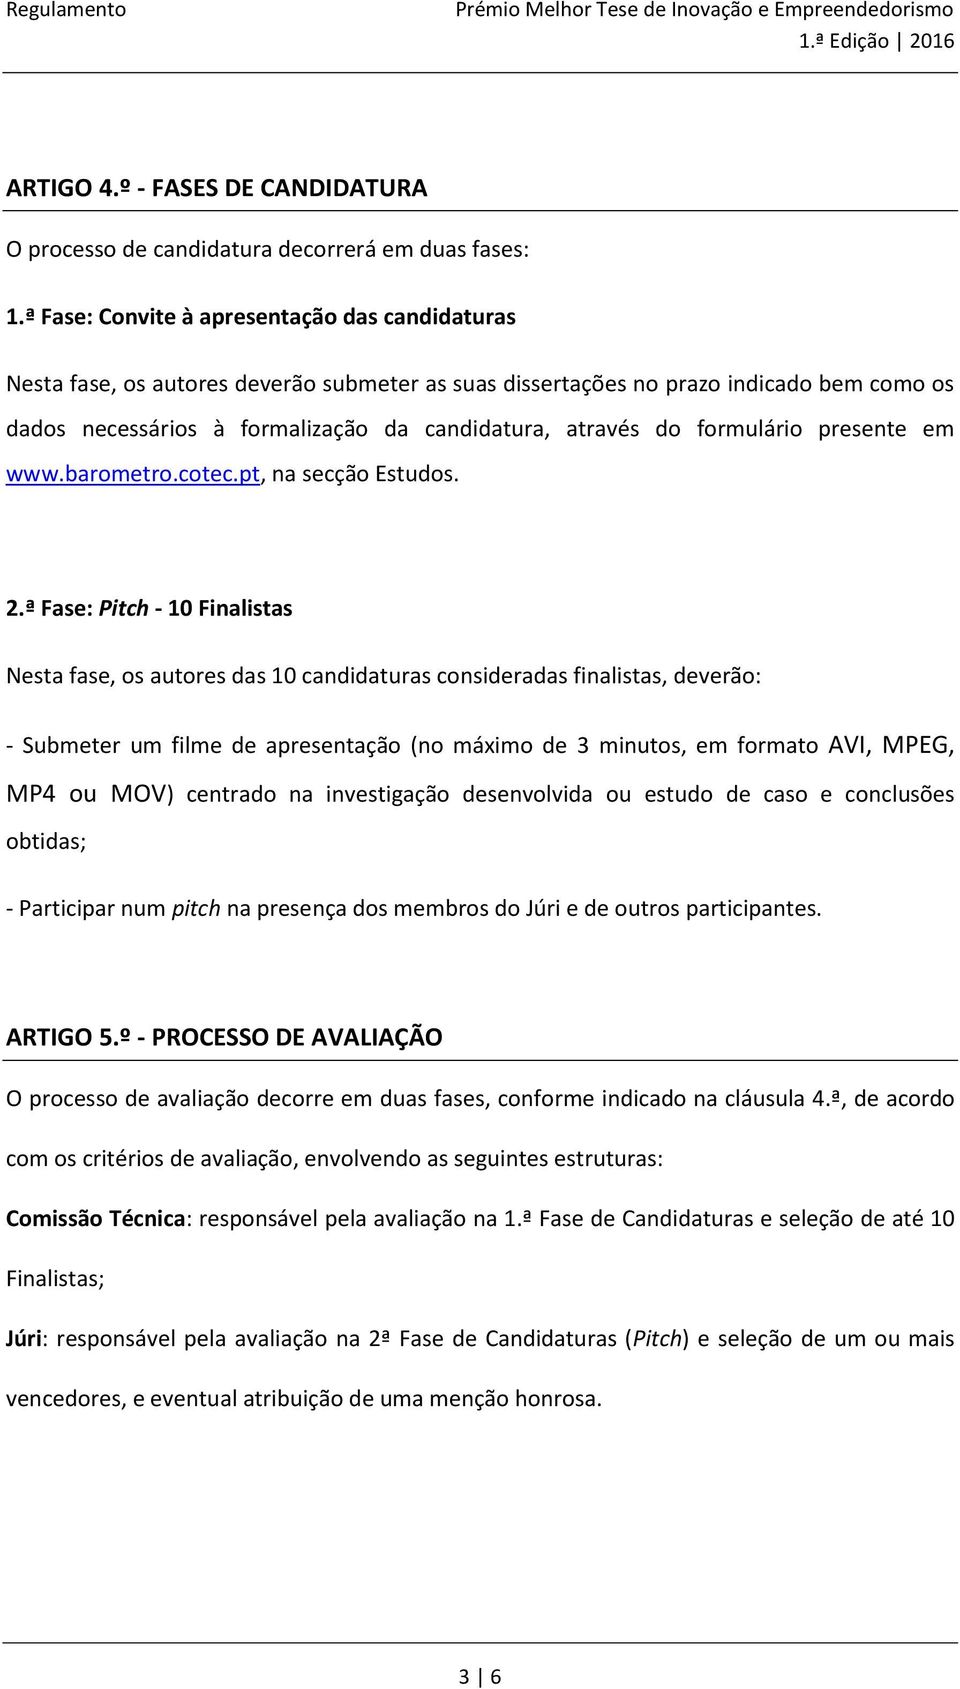 formulário presente em www.barometro.cotec.pt, na secção Estudos. 2.